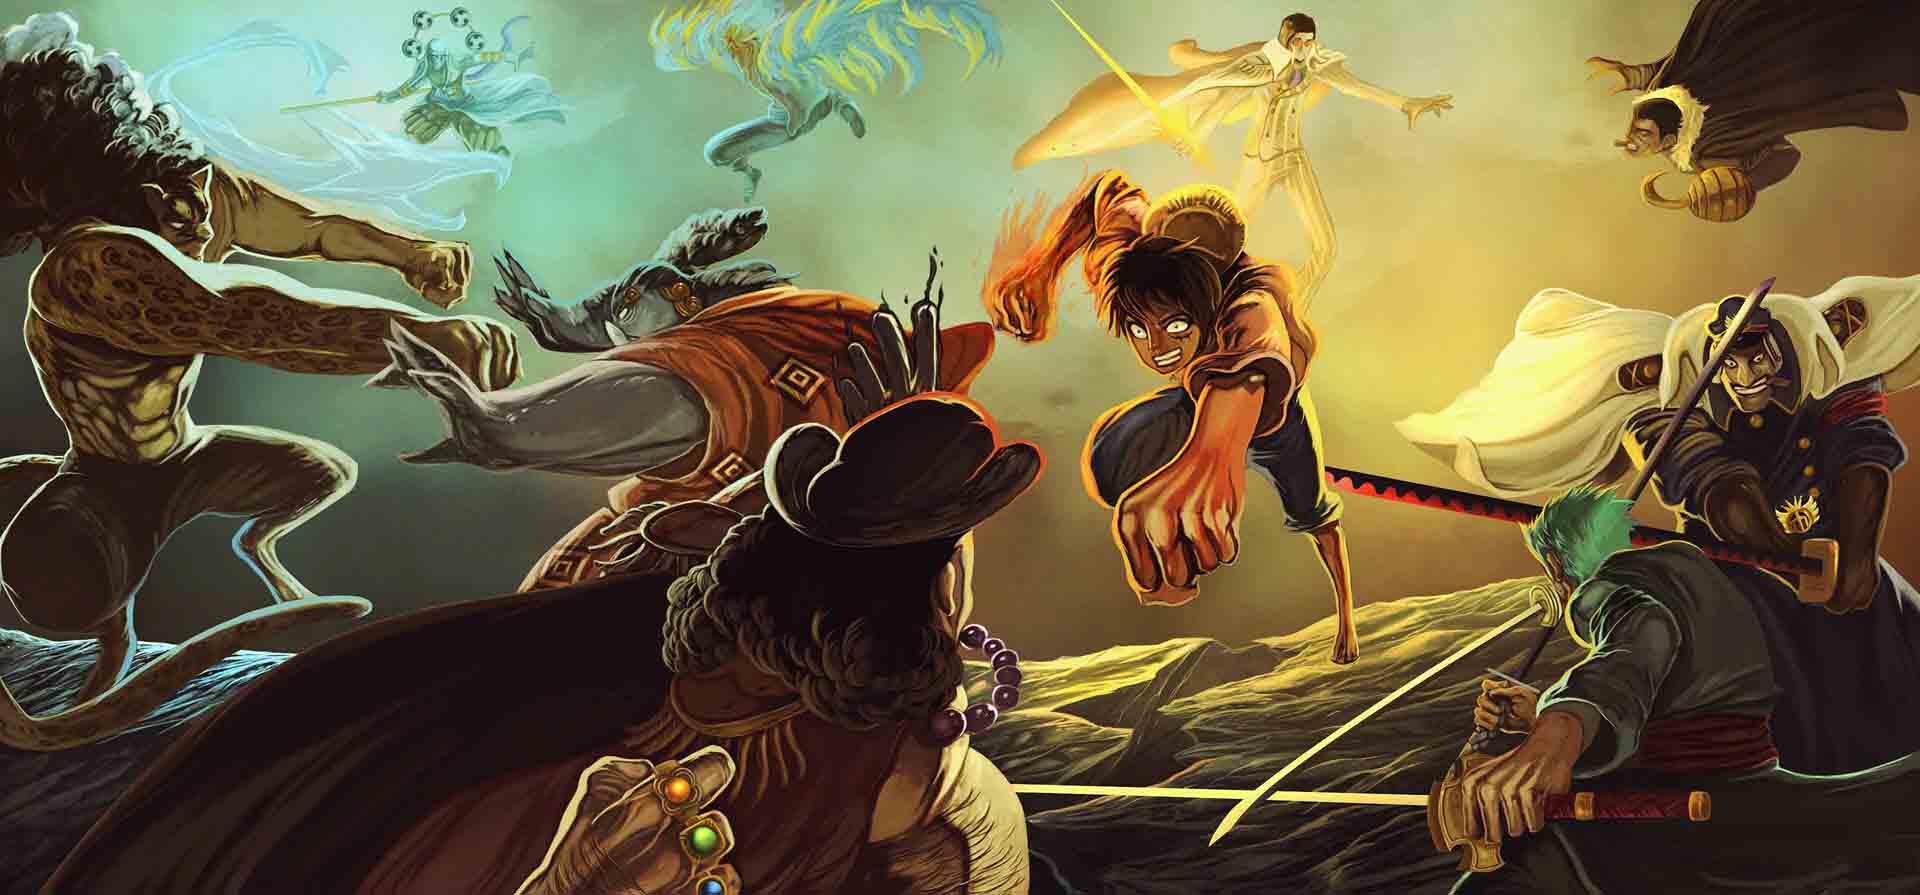 Hình ảnh One Piece về nắm đấm lửa